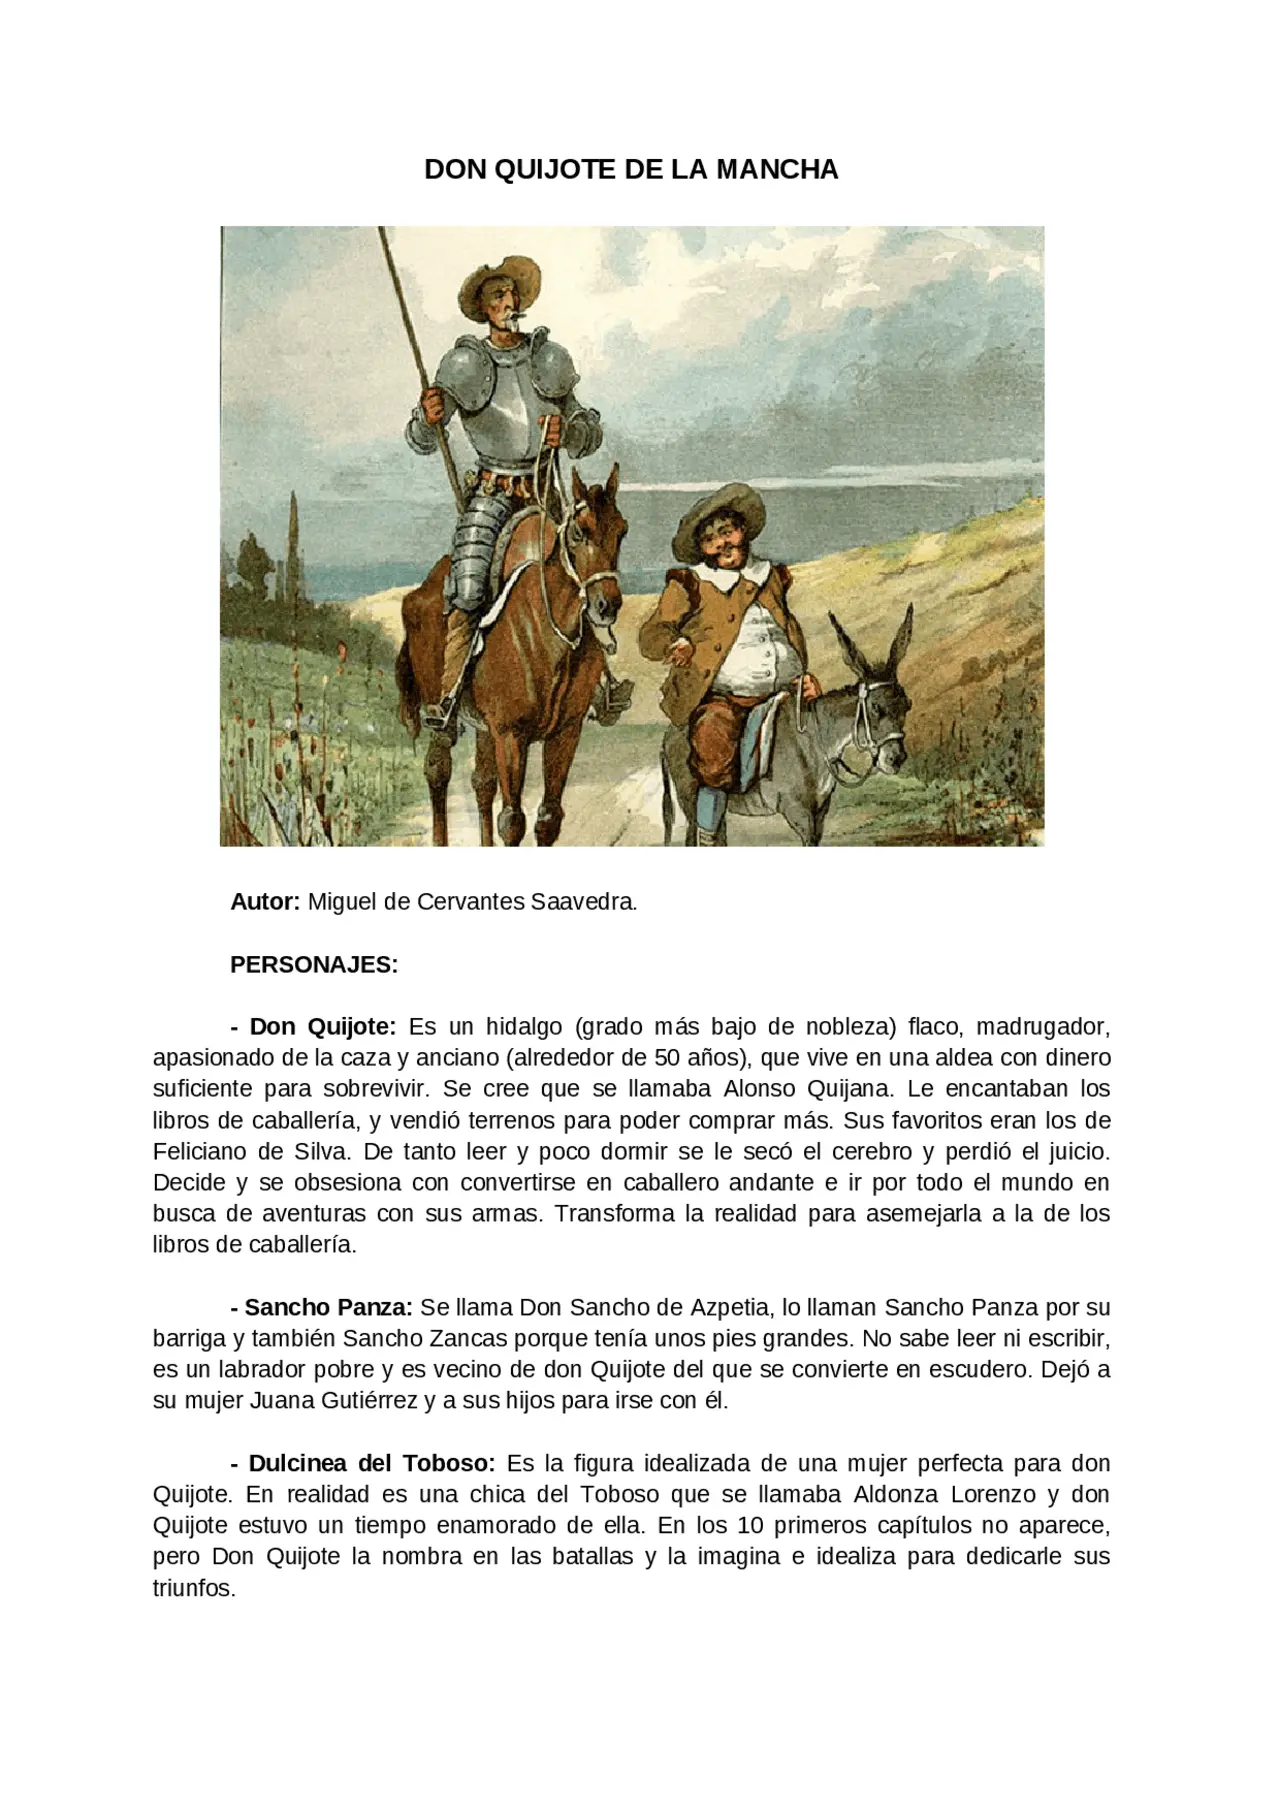 el ingenioso hidalgo don quijote de la mancha resumen - Qué trata El ingenioso hidalgo don Quijote de la Mancha